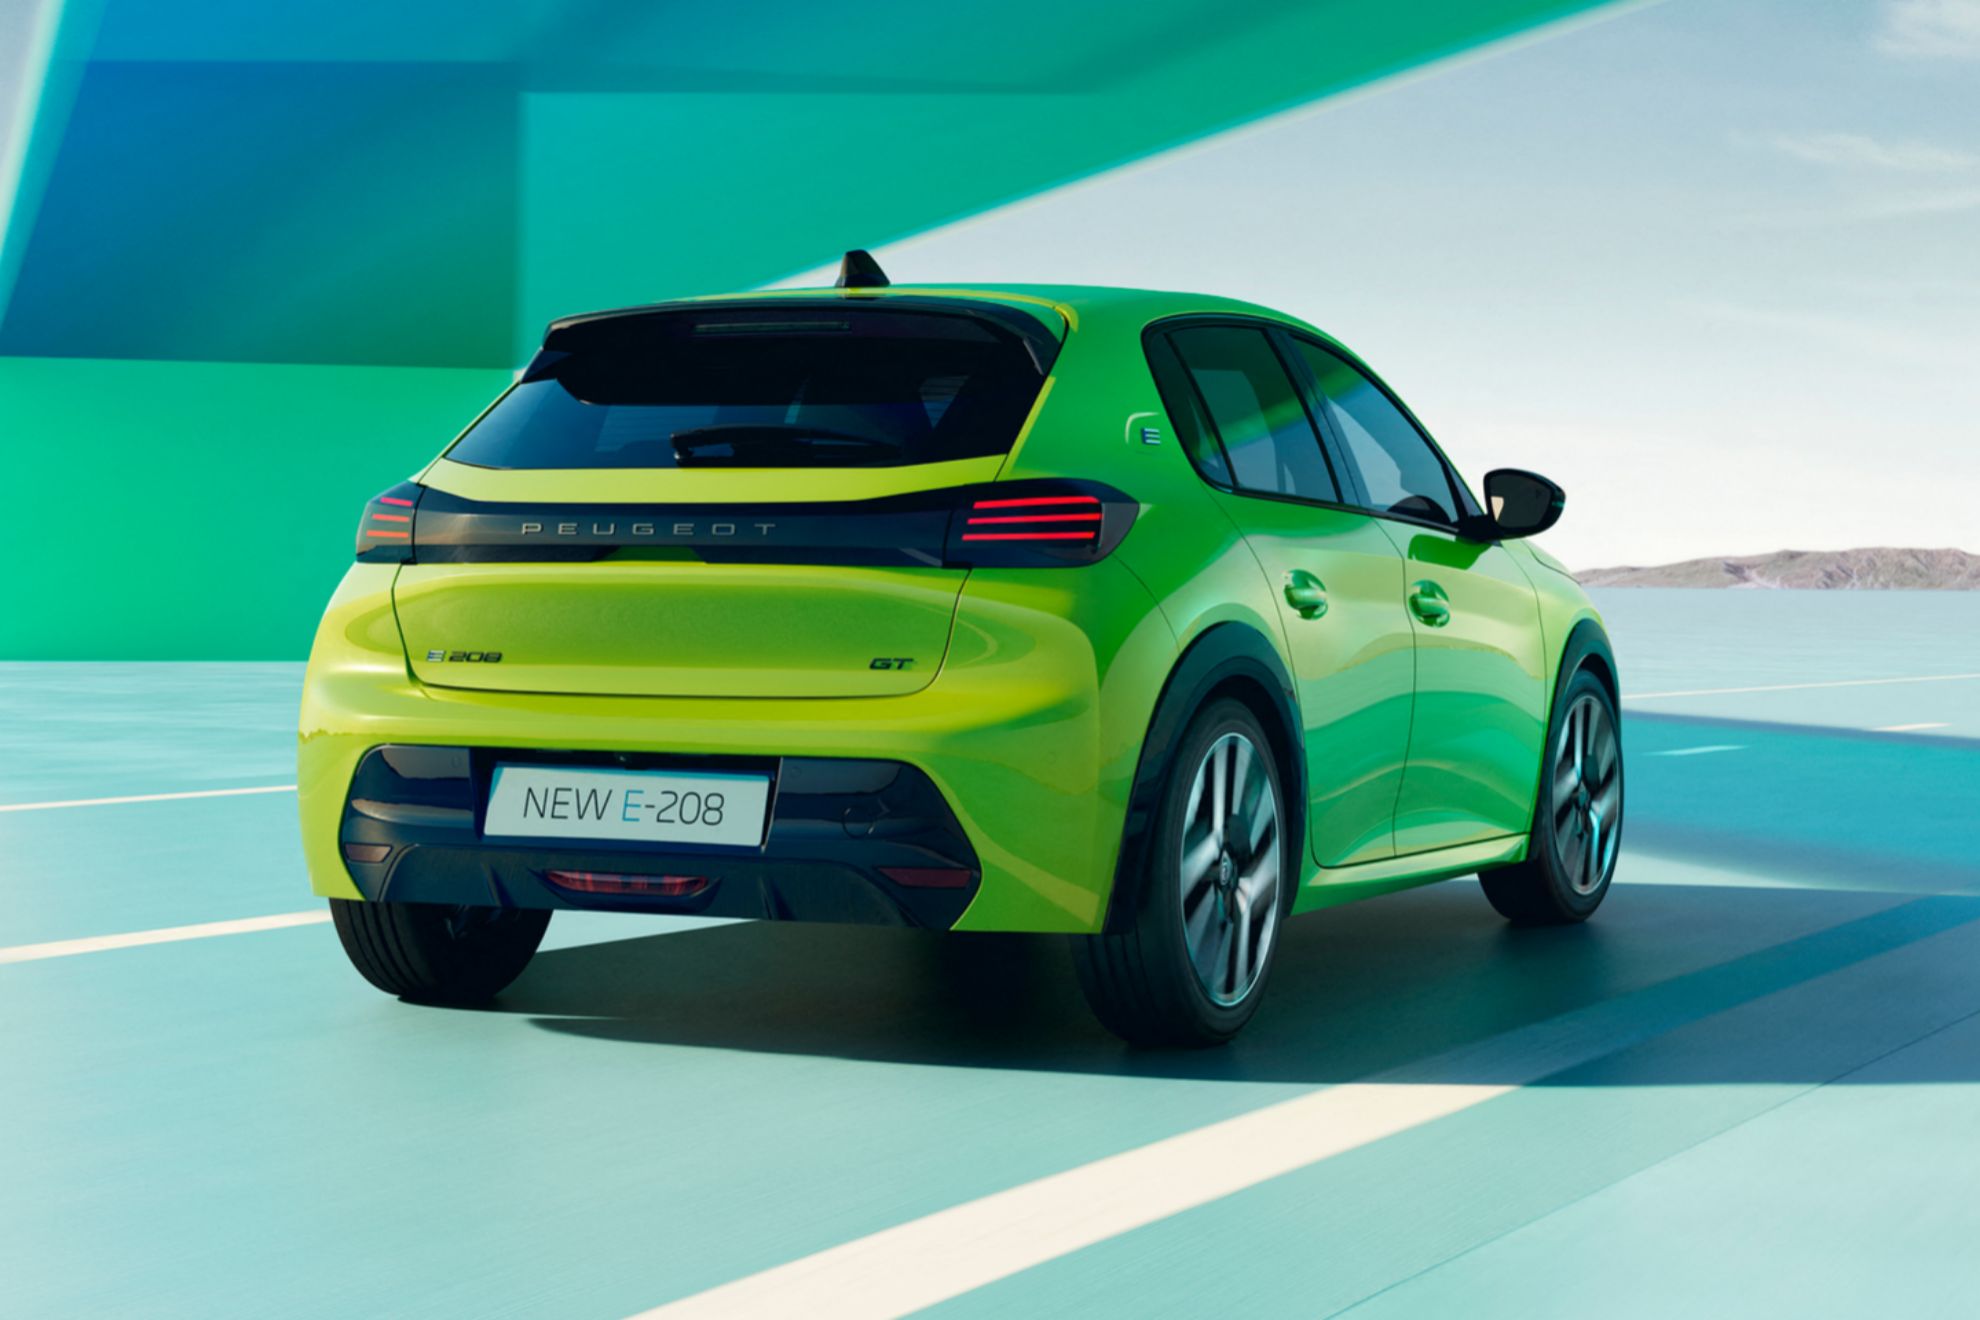 Los cambios estéticos en el frontal y la trasera van acorde a la estética de los nuevos Peugeot.